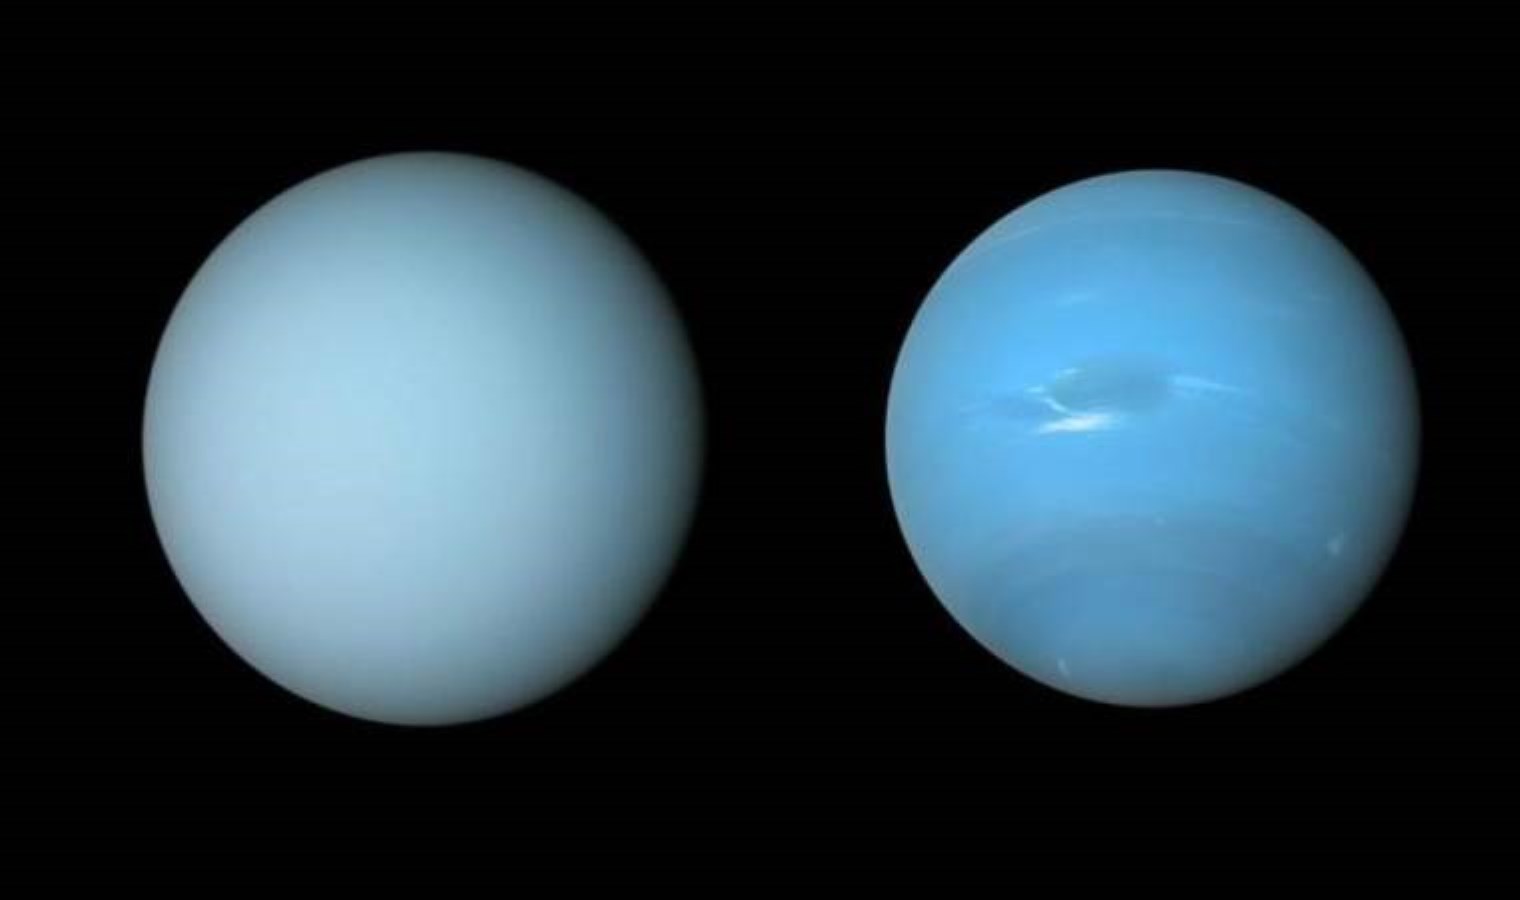 Τα αληθινά χρώματα των δύο πλανητών αποκαλύφθηκαν – Last Minute Science Technology News